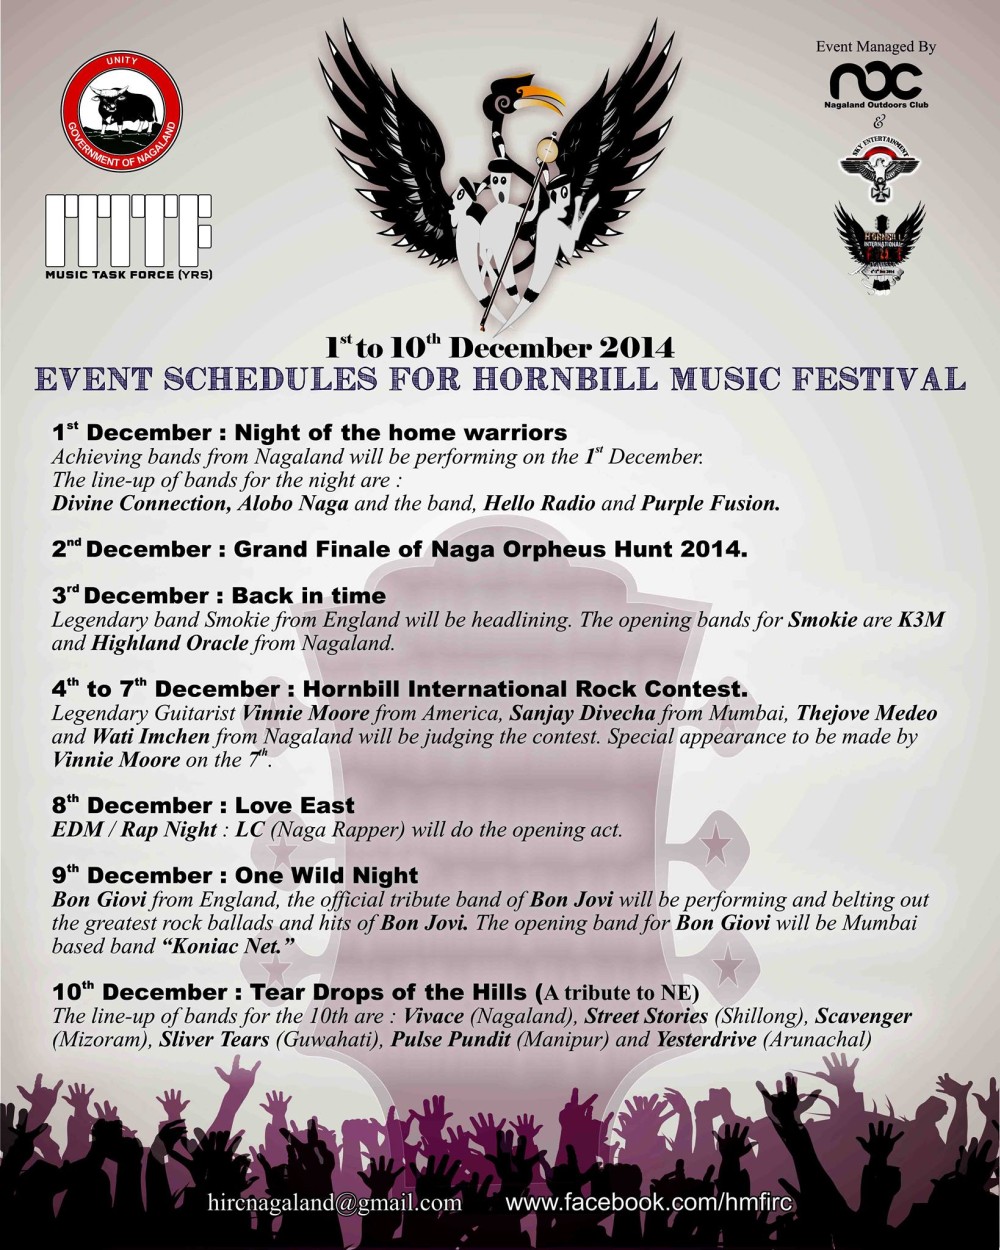 Hornbill Music Festival 2014 : Event Schedulet 